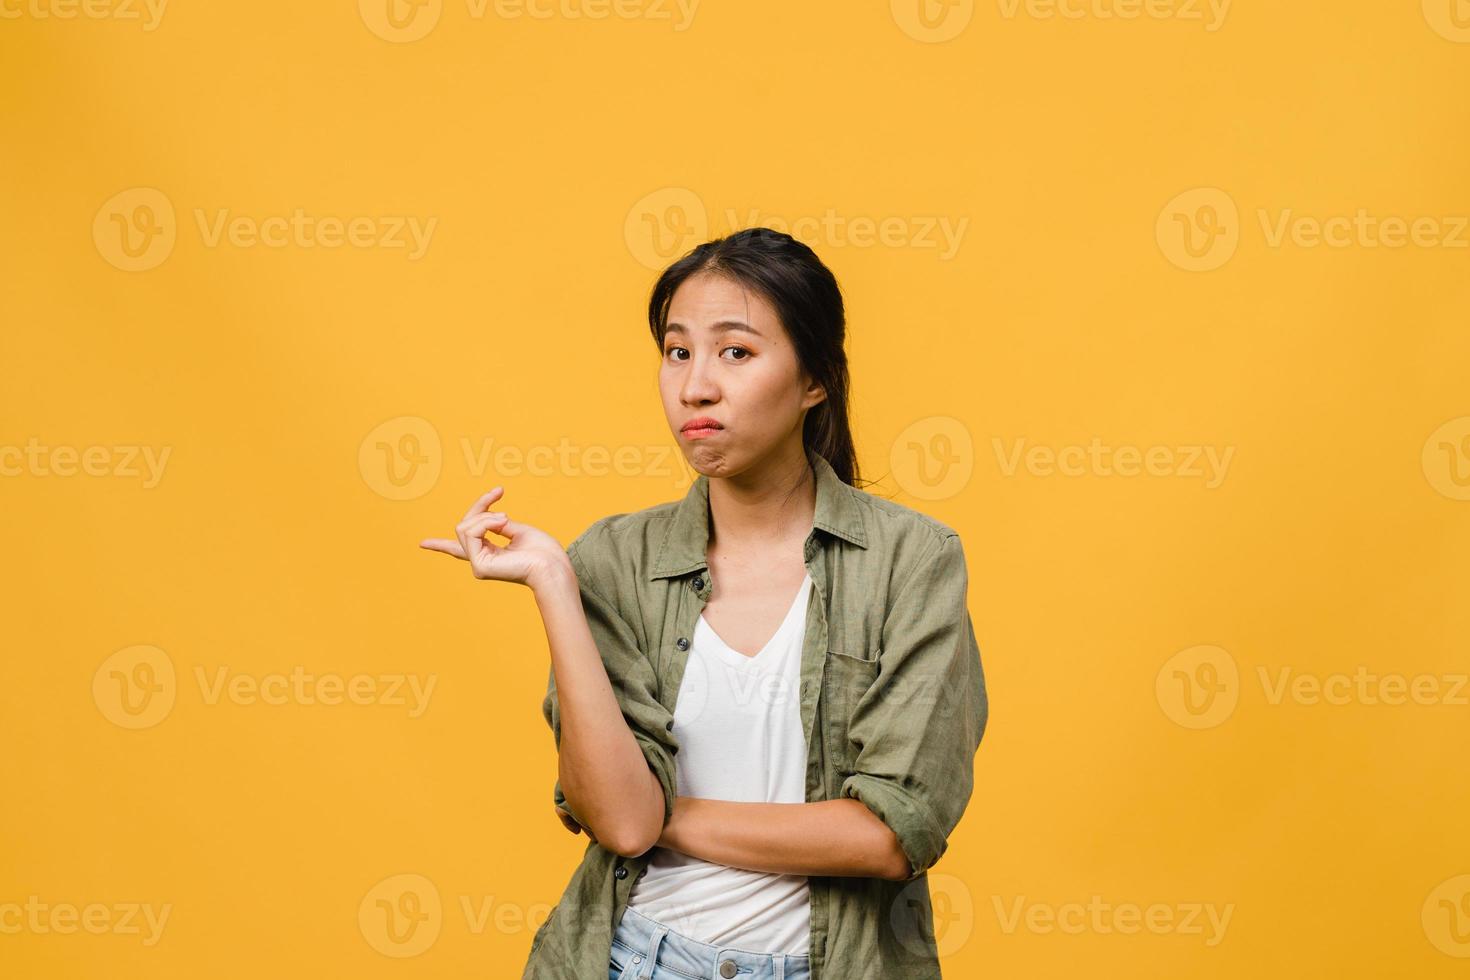 jovem asiática mostra algo incrível no espaço em branco com expressão negativa, animado gritando, chorando emocional com raiva olhando para a câmera isolada sobre fundo amarelo. conceito de expressão facial. foto